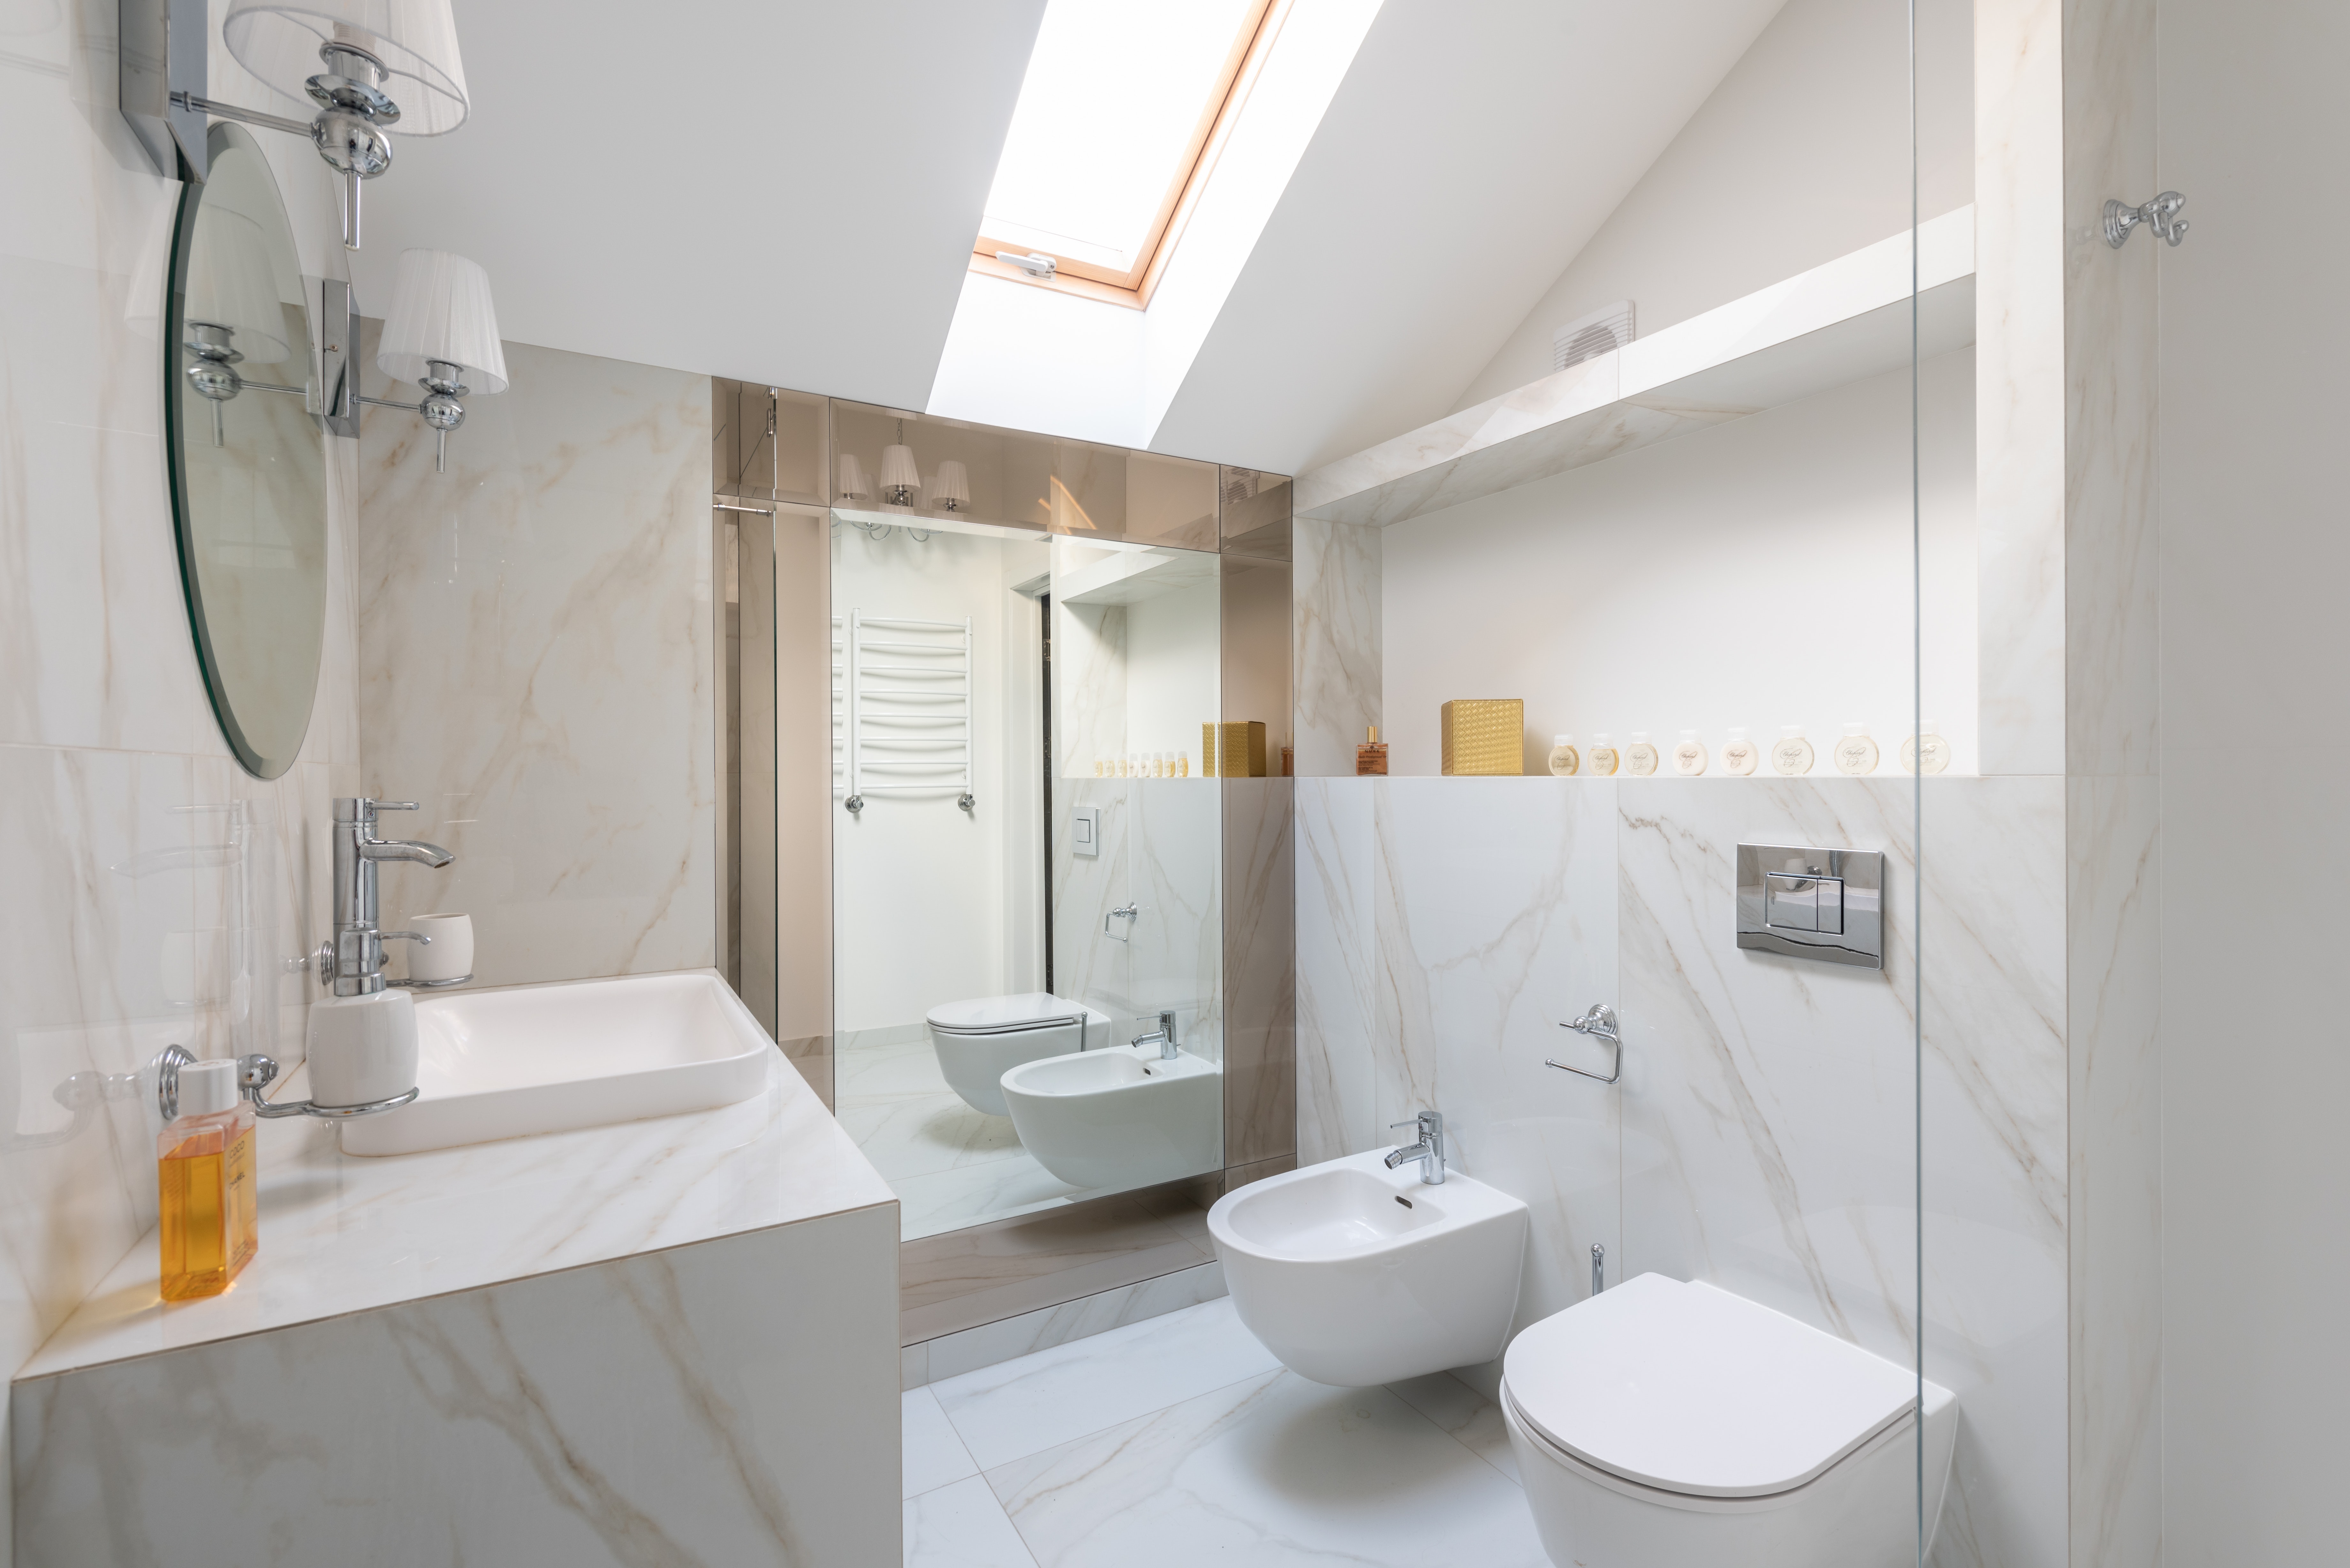 Ванная комната с естественным освещением, зеркало размещено в тени на стене изолировано от воздействия солнца.